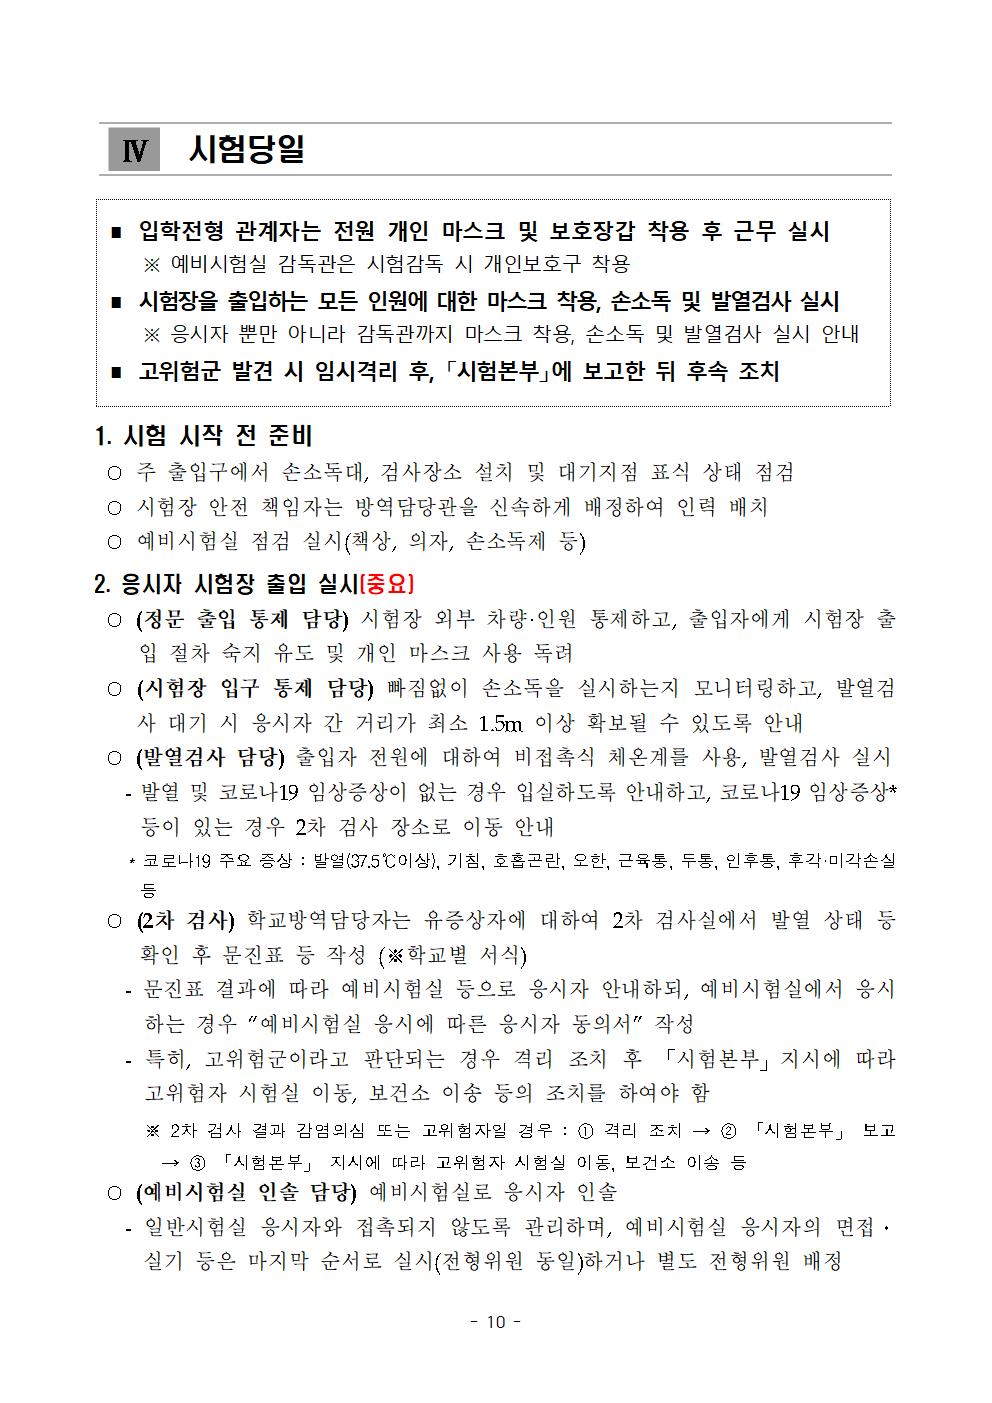 2021학년도 학교별 입학전형 안전관리 계획_한국게임과학고(홈페이지게시)012